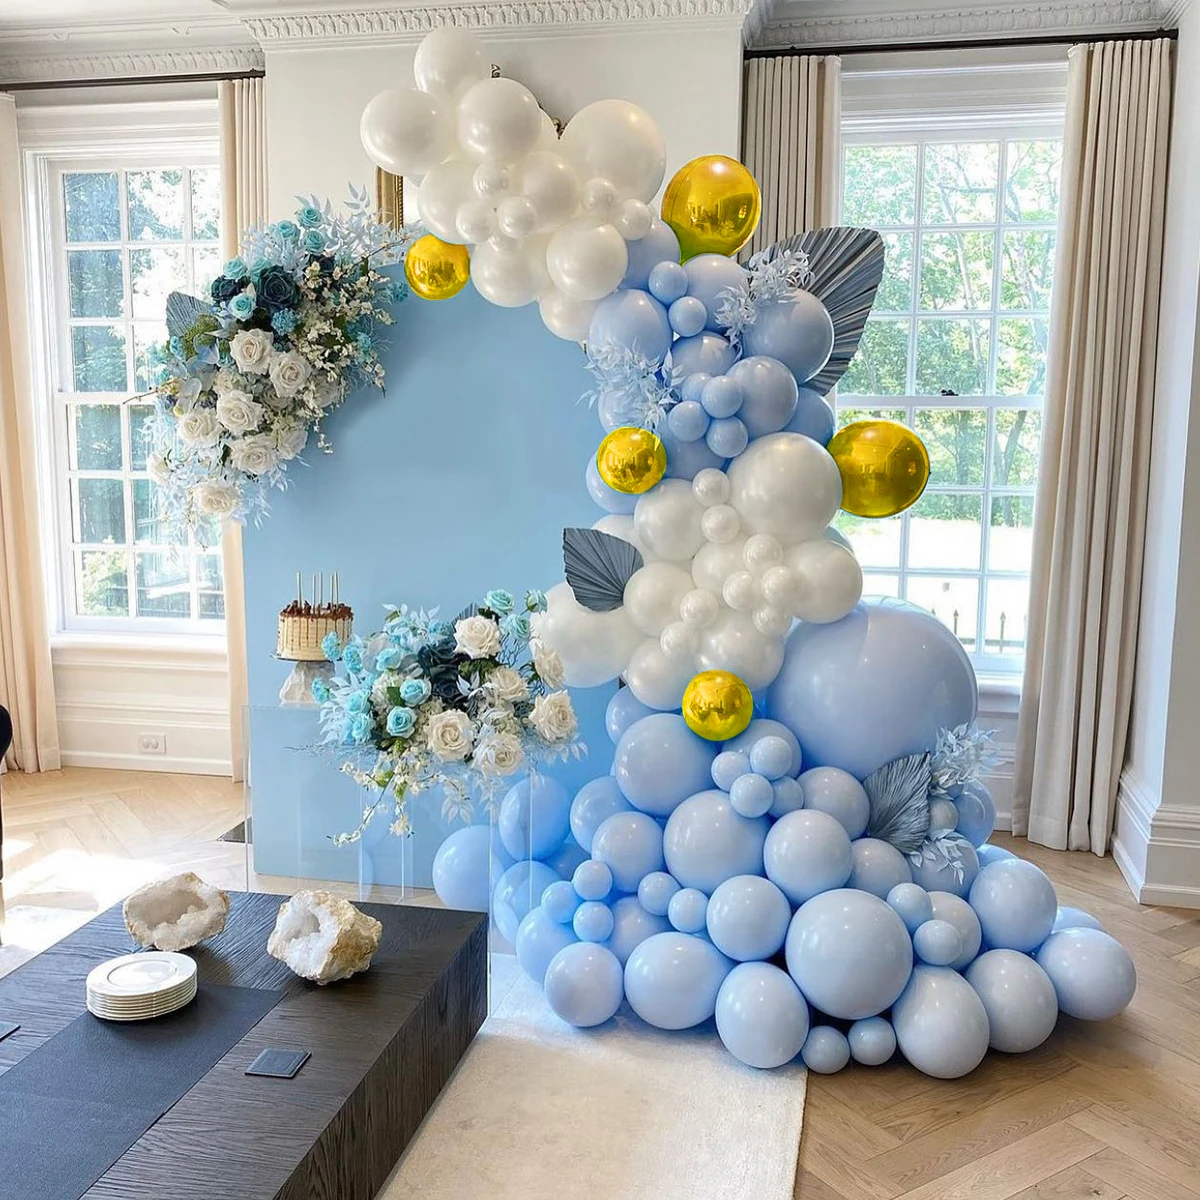 

Синий шар гирлянда арочный комплект свадьба день рождения конфетти украшения латексные воздушные шары пол раскрыть ребенок душ Декор балл...